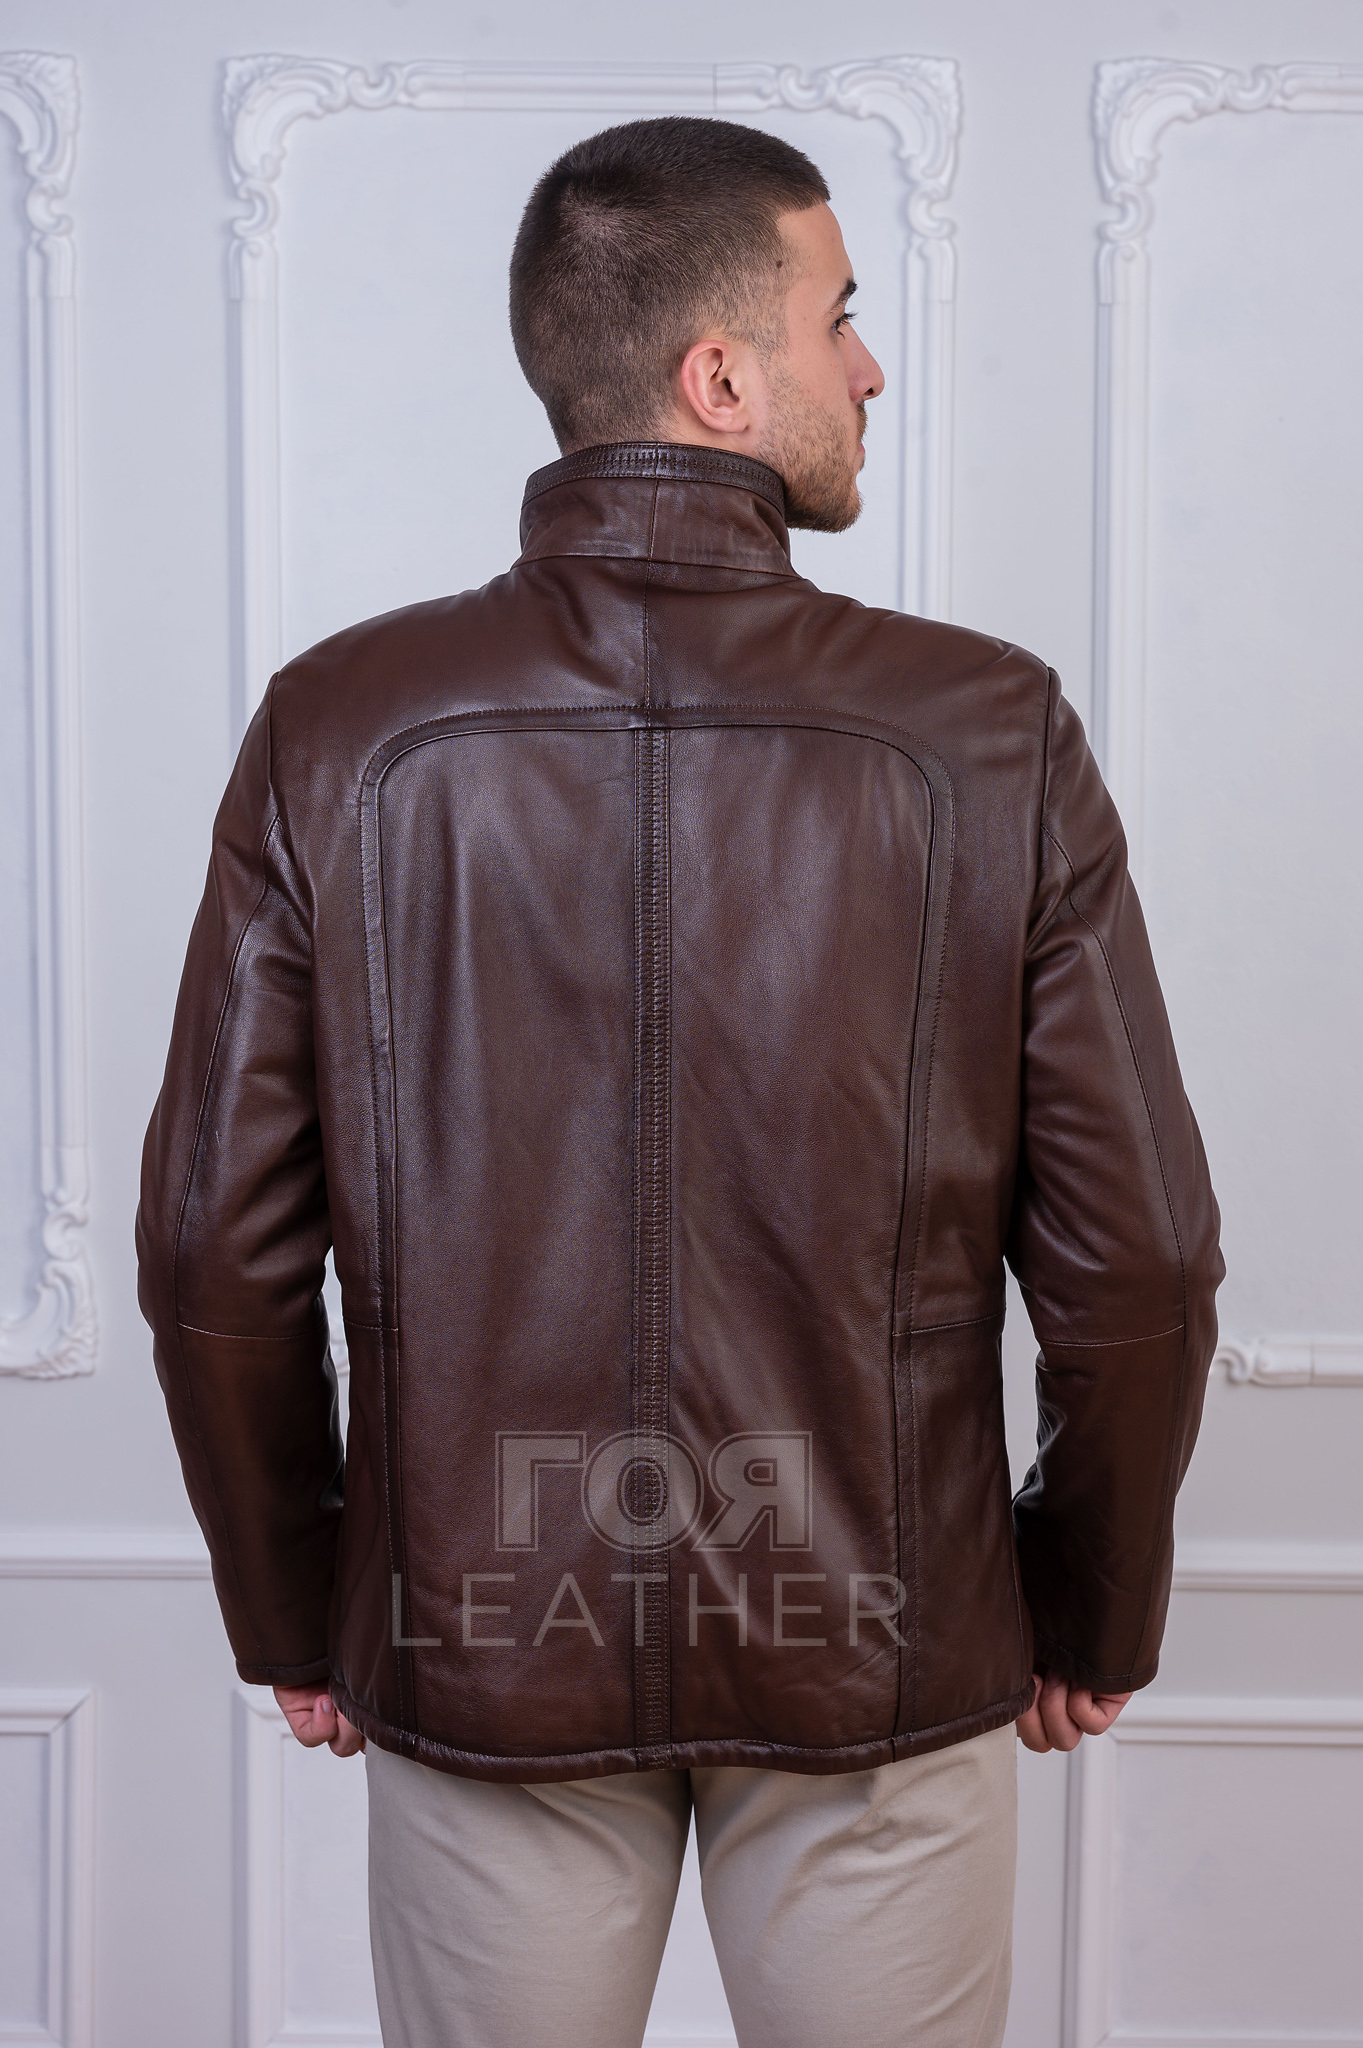 Мъжко право кожено яке от ГОЯ Leather. Модел с изчистена права кройка, изработен от качествена агнешка напа. Между кожата и хастара има лека вата, което го прави подходящ за сезон пролет-есен.